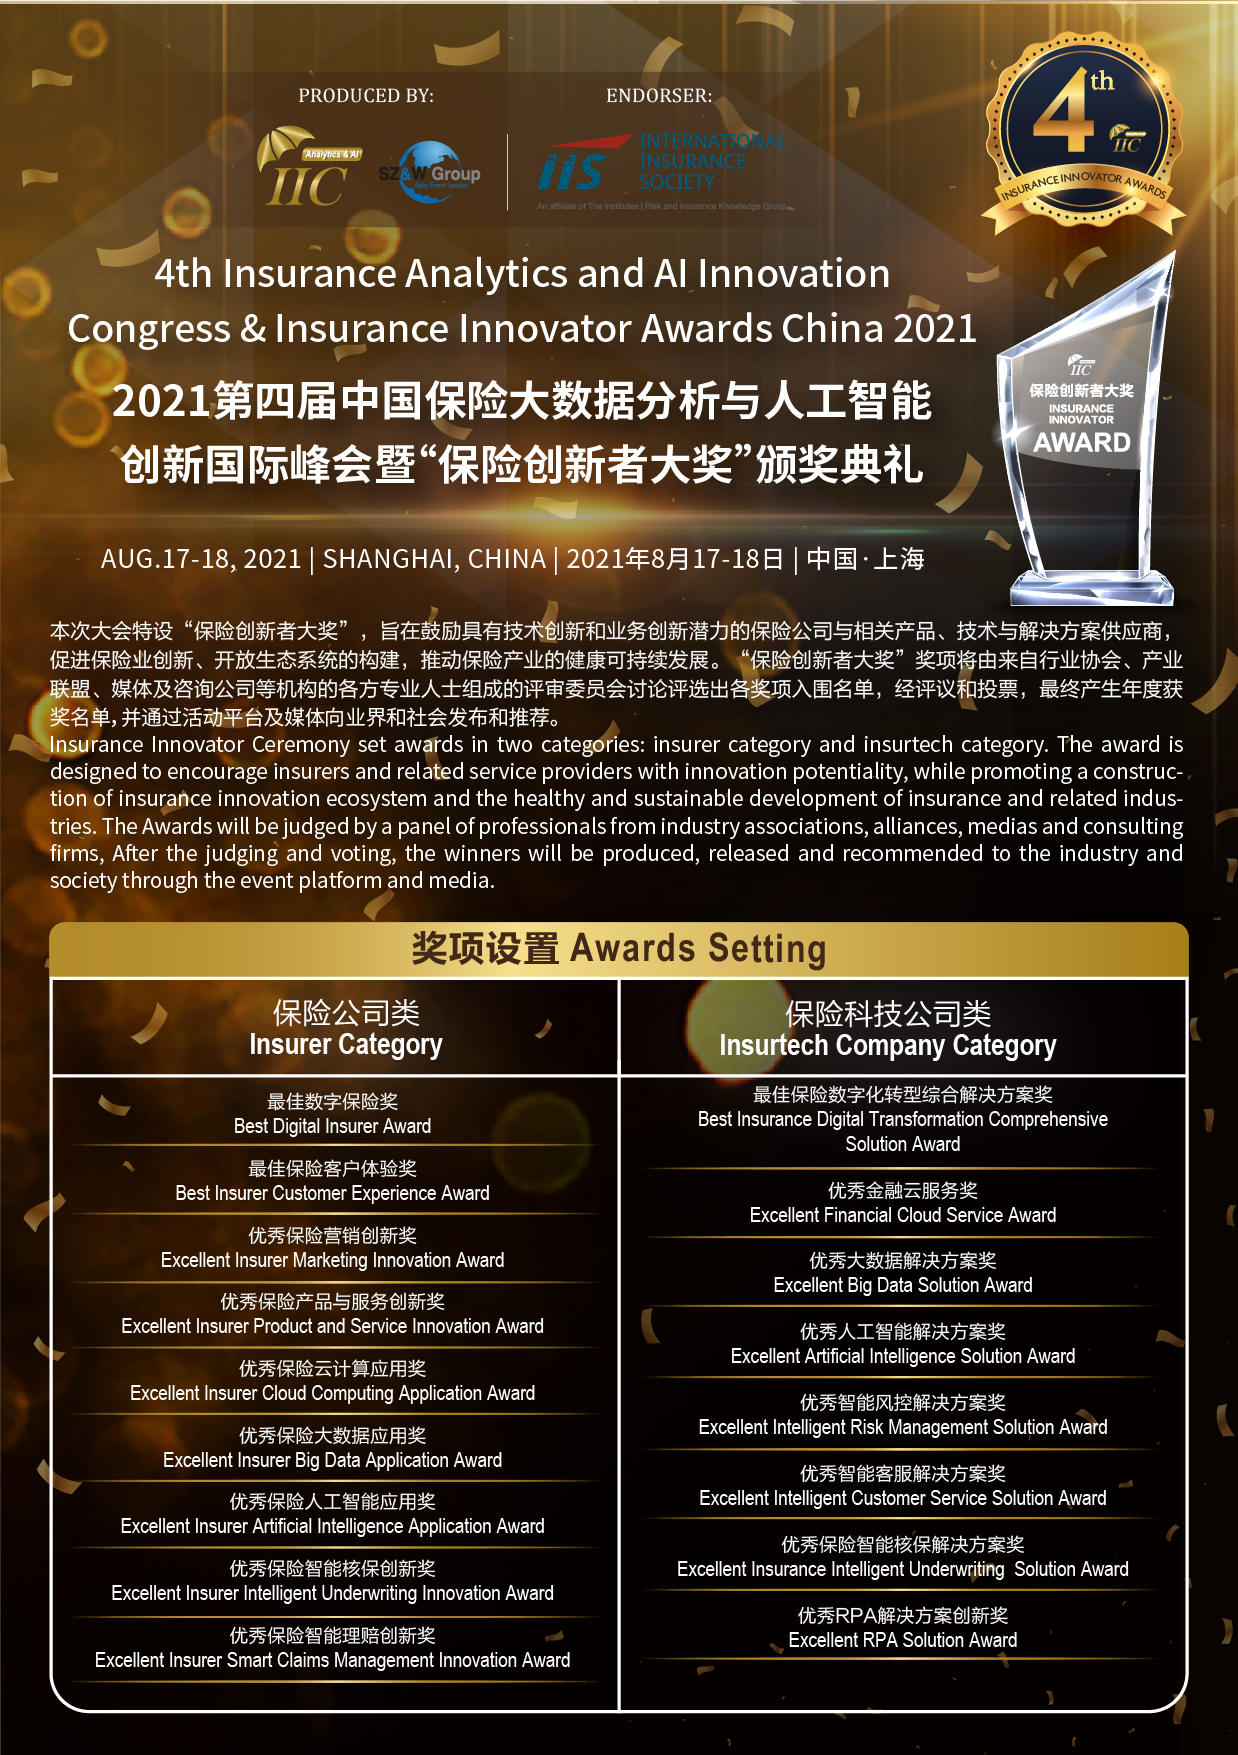 2021年第四届中国保险大数据分析与人工智能创新国际峰会暨“保险创新者大奖”颁奖典礼